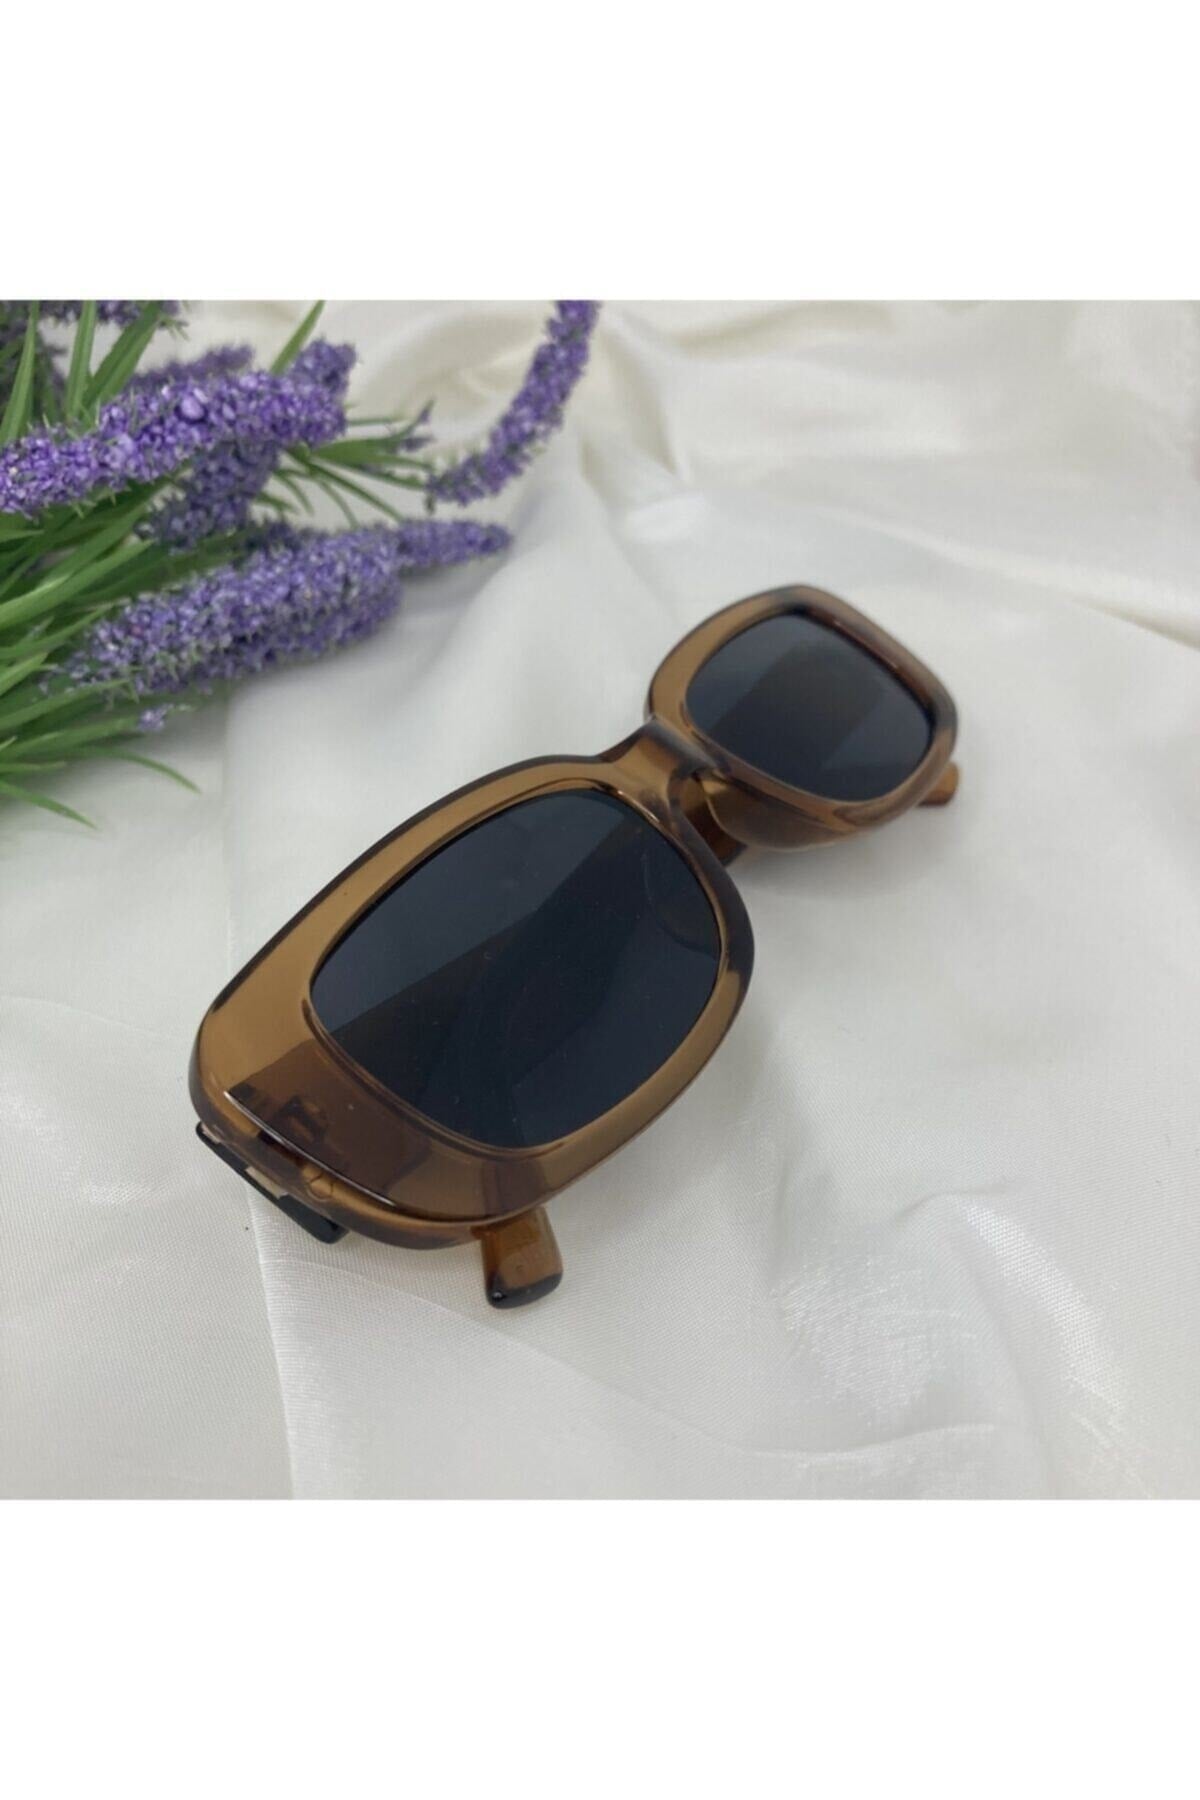 Unisex Vintage Brown Sunglasses